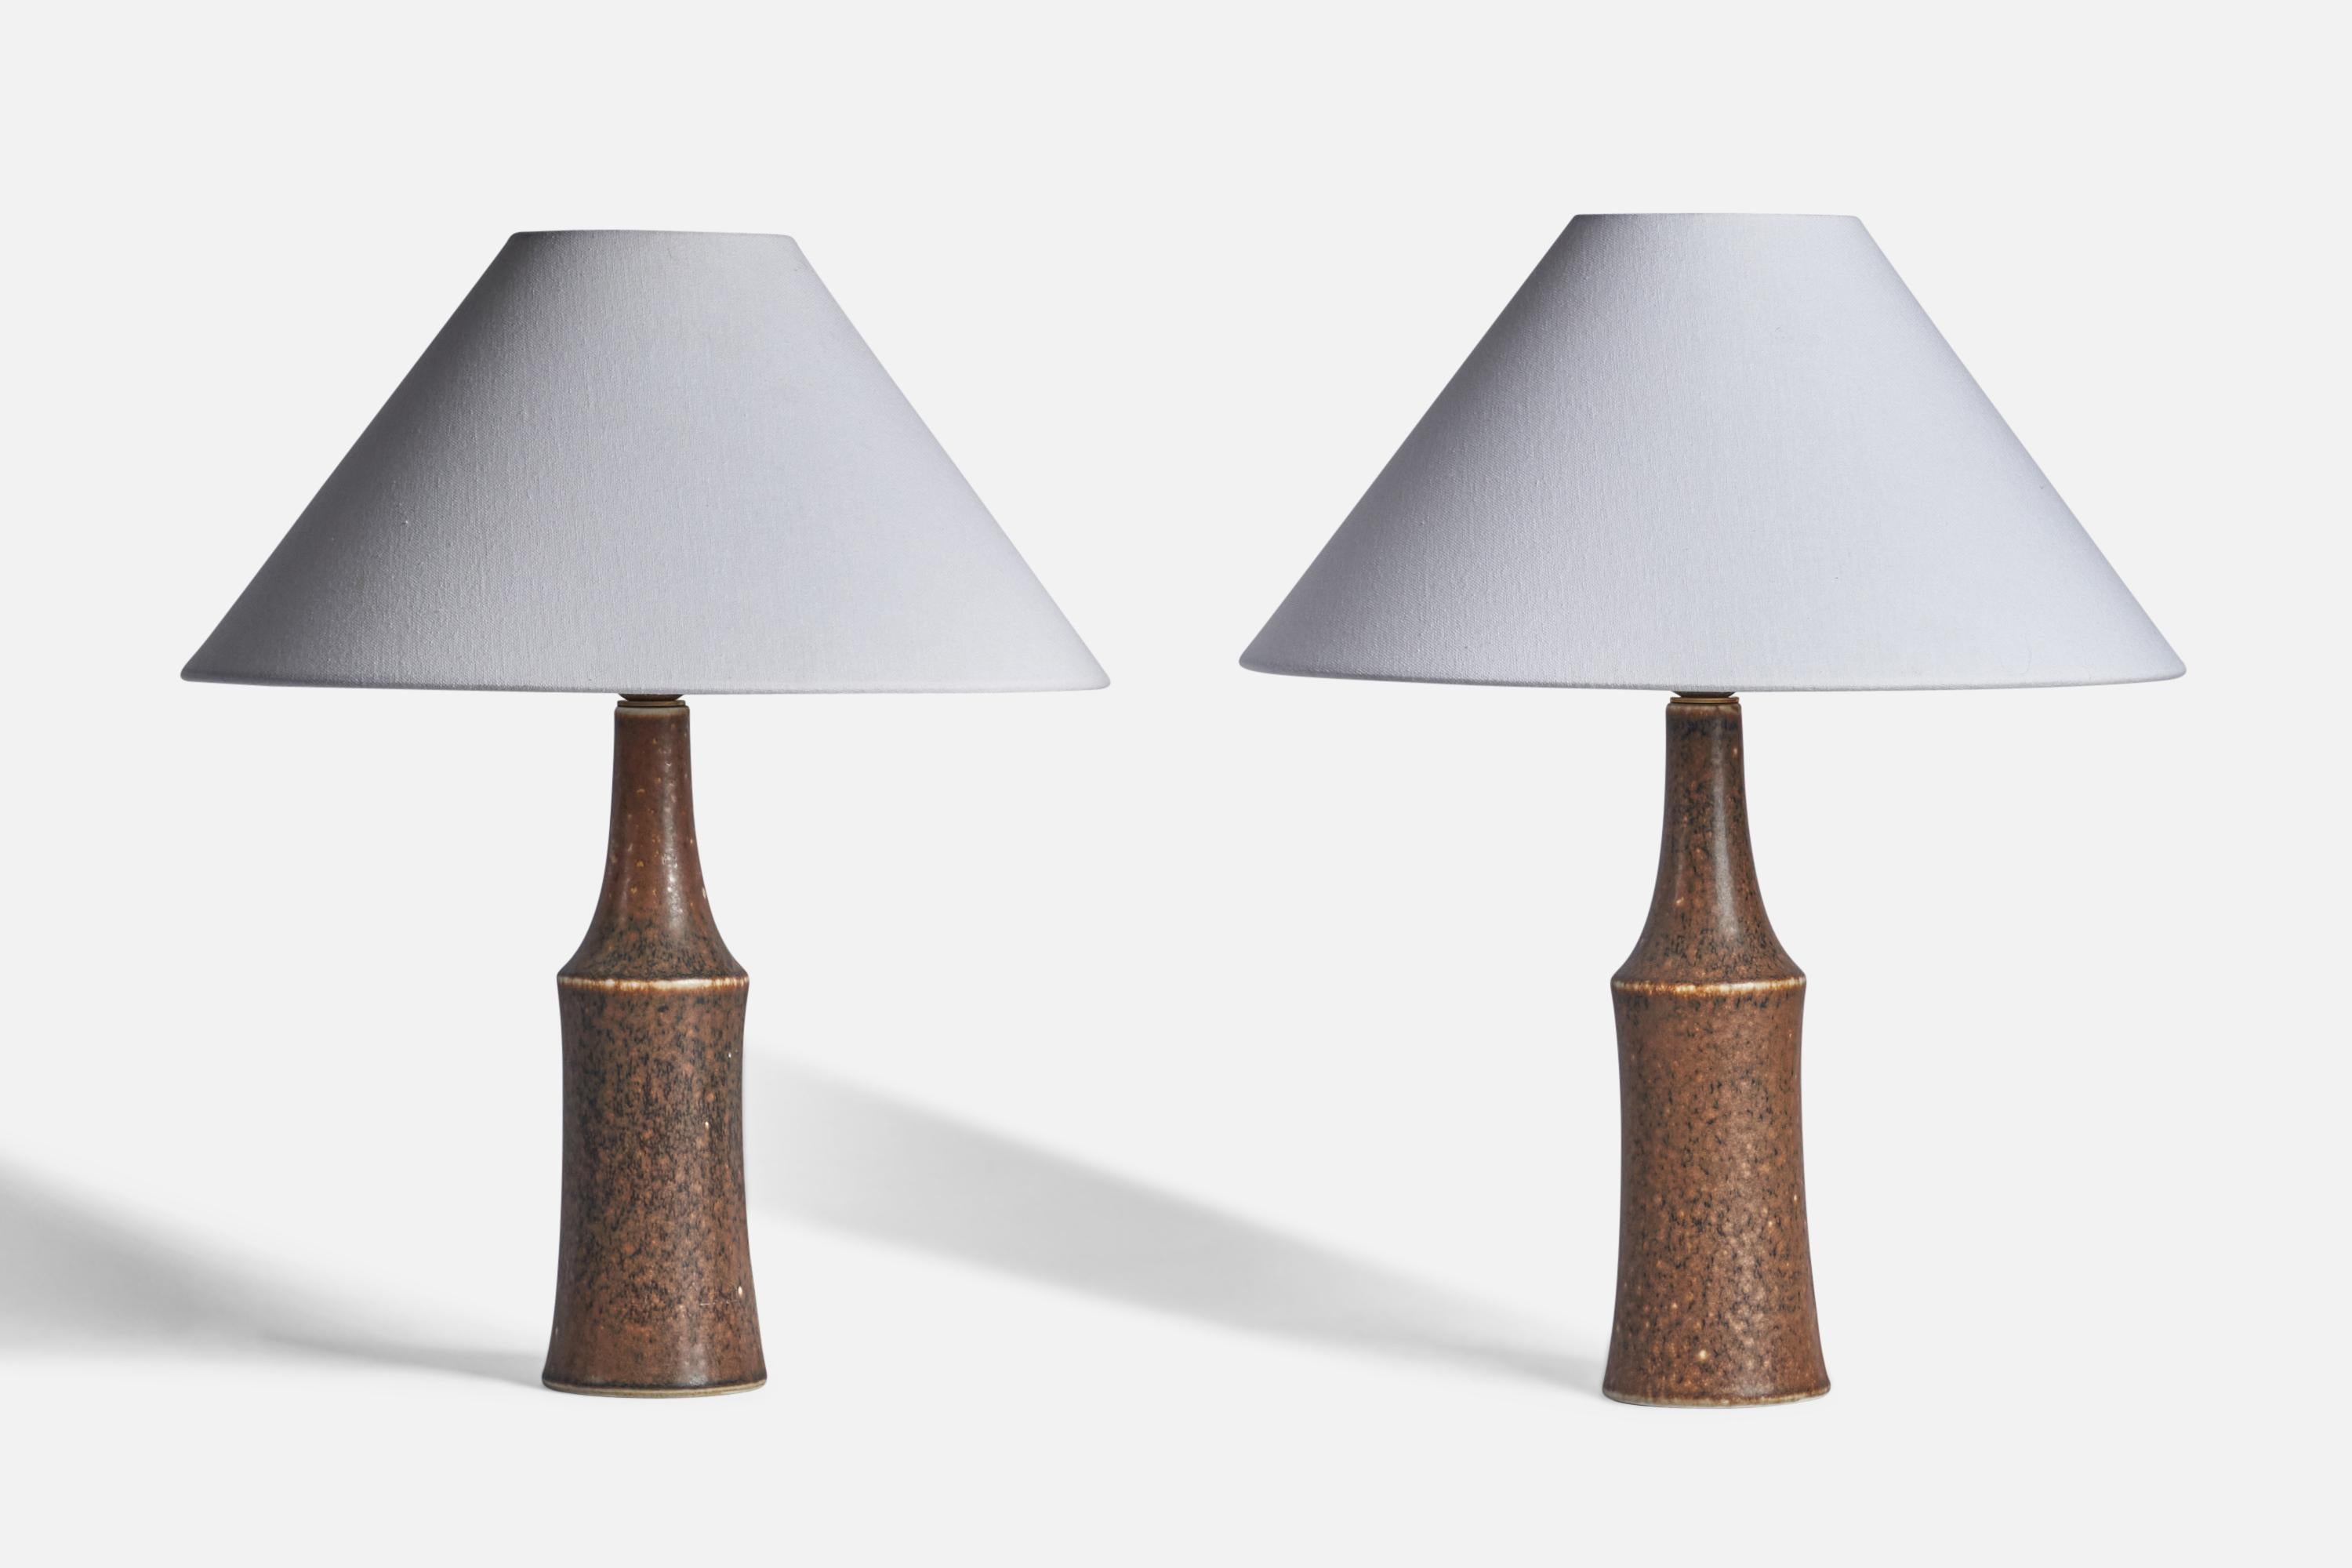 Paire de lampes de table en grès émaillé brun, conçues par Carl-Harry Stålhane et produites par Rörstrand, Suède, années 1950.

Dimensions de la lampe (pouces) : 13.85 H x 3.80